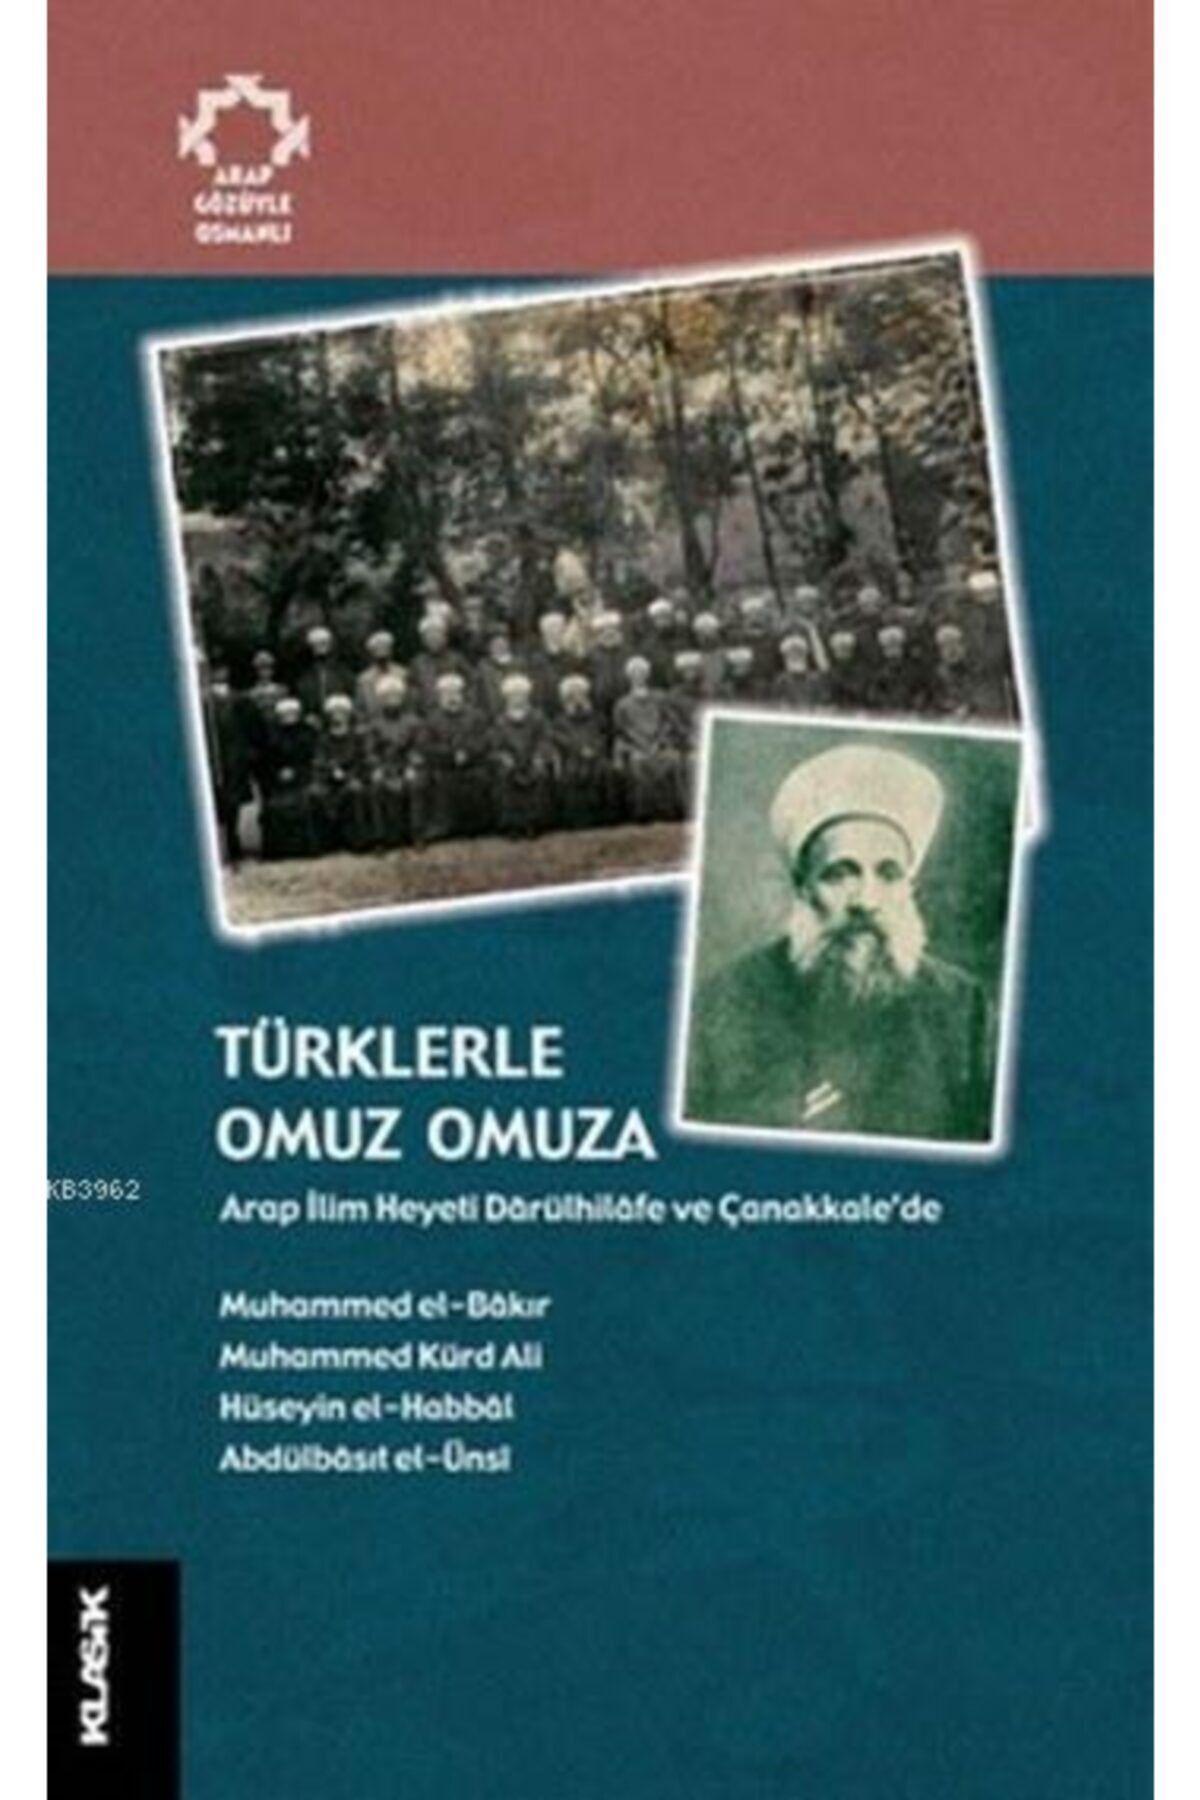 Klasik Yayınları Türklerle Omuz Omuza//muhammed El Bakır,muhammed Kürd Ali,hüseyin